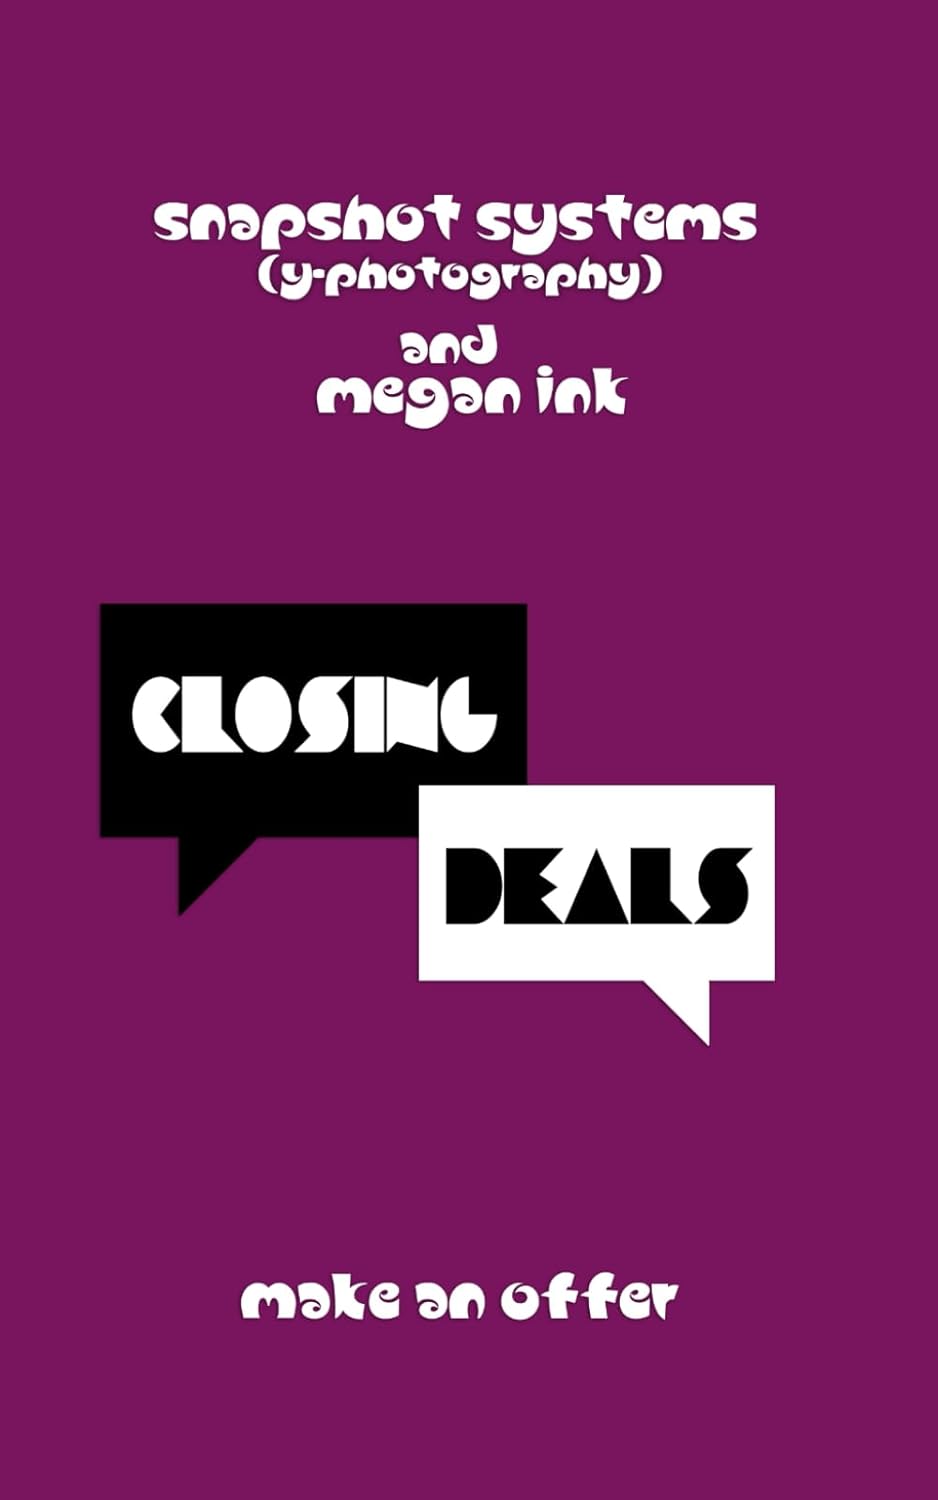 Closing Deals: Make an Offer